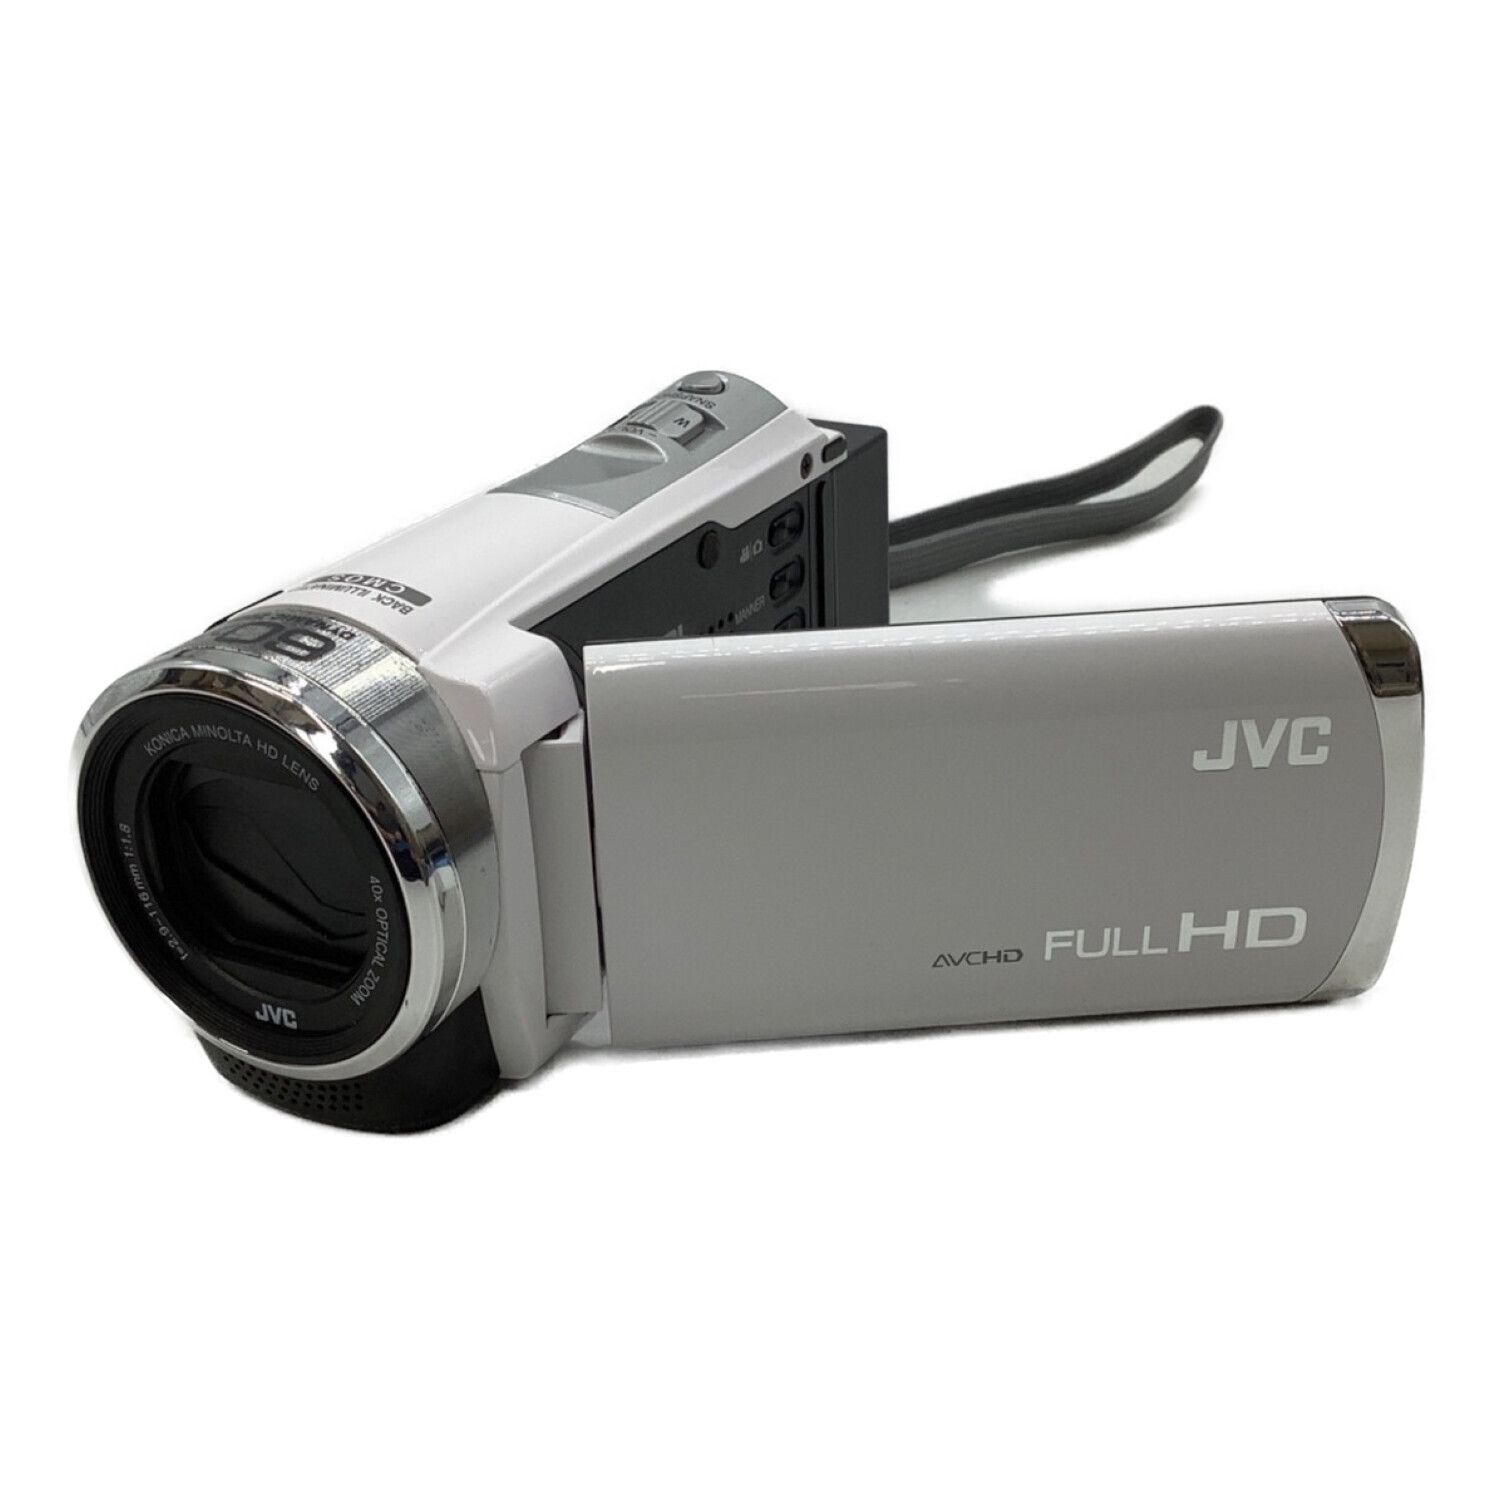 JVC Everio(エブリオ)GZ-E180 ビデオカメラ - ビデオカメラ